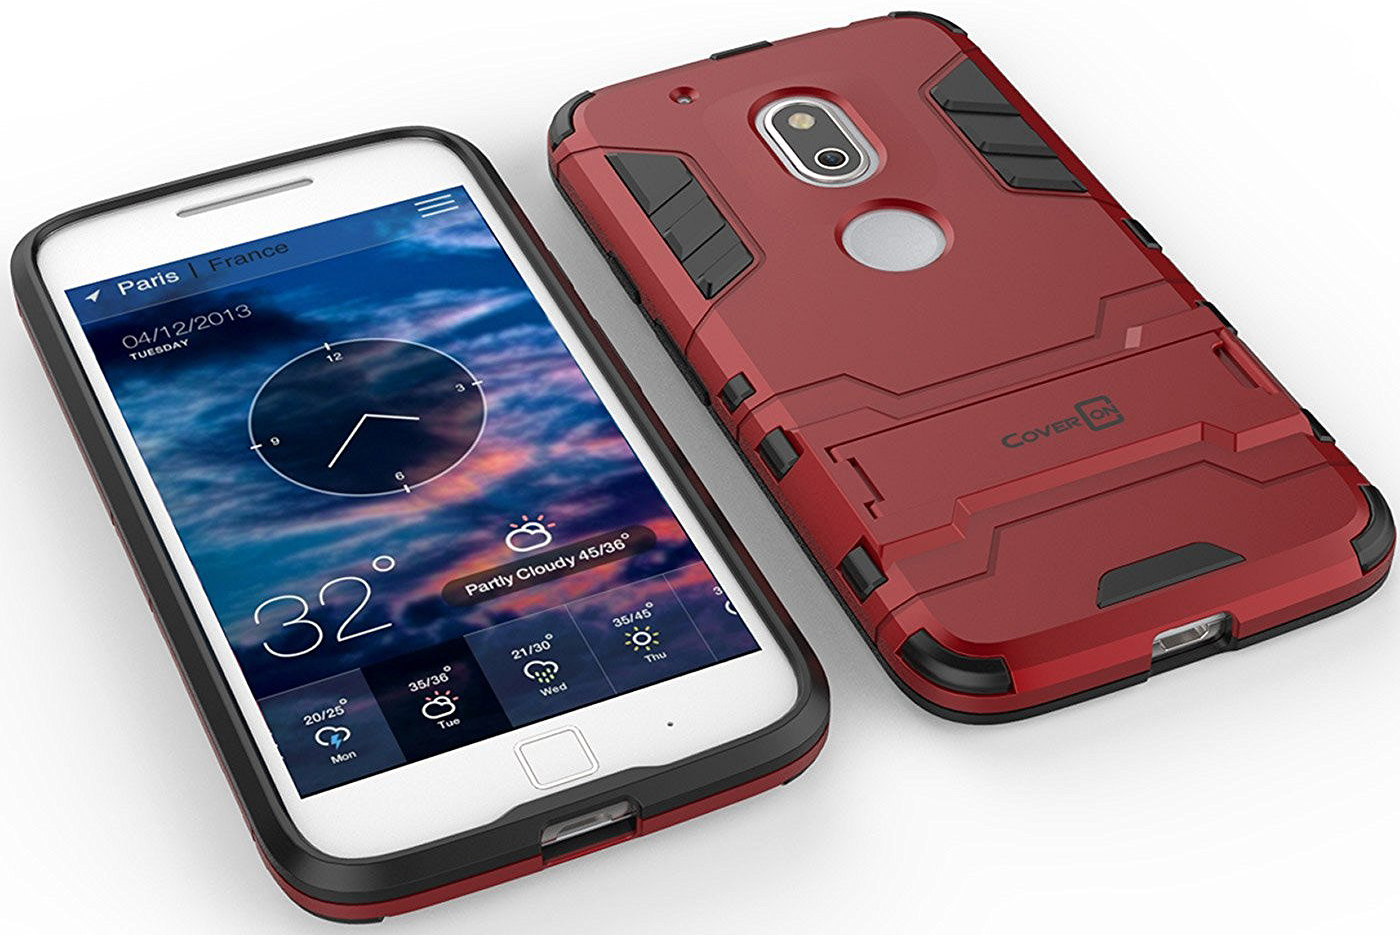 verkorten rollen toelage The 7 Best Moto G4 Play Cases | Digital Trends